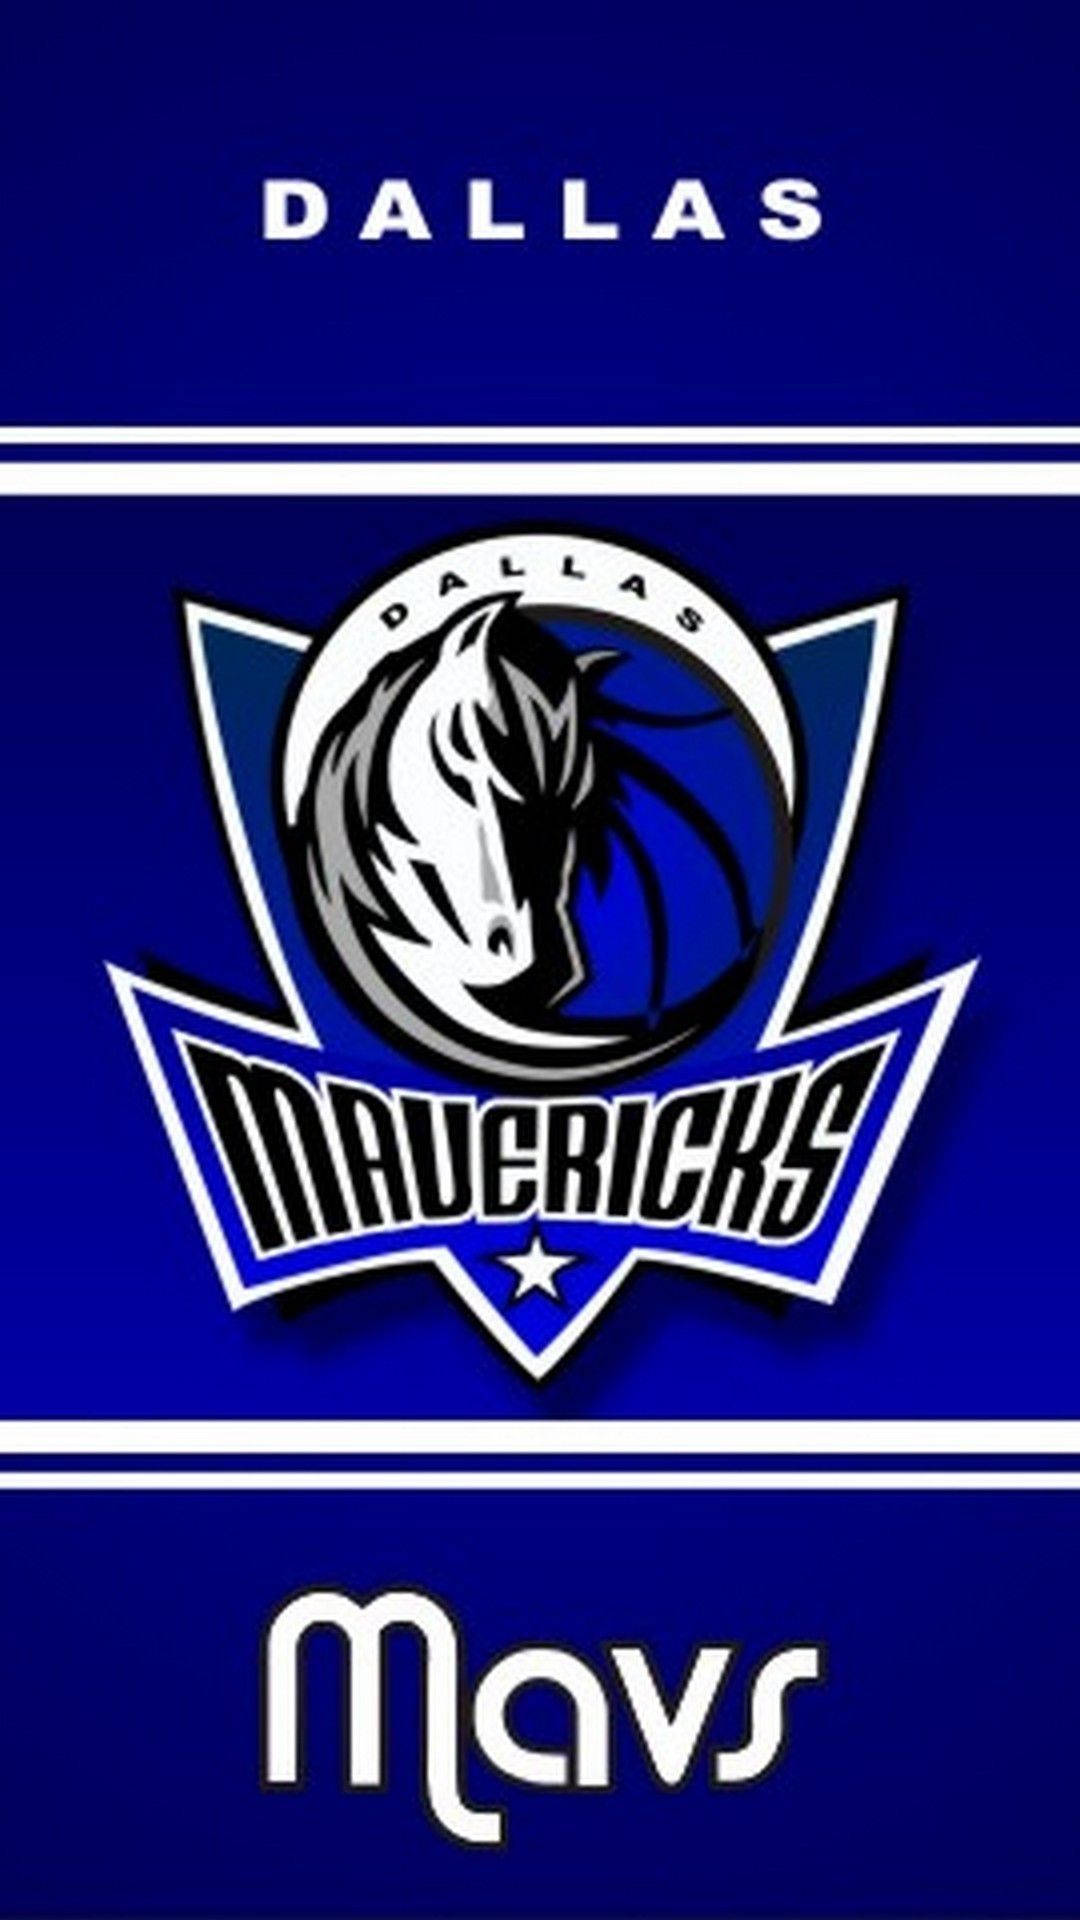 Dallas Mavericks Mavs